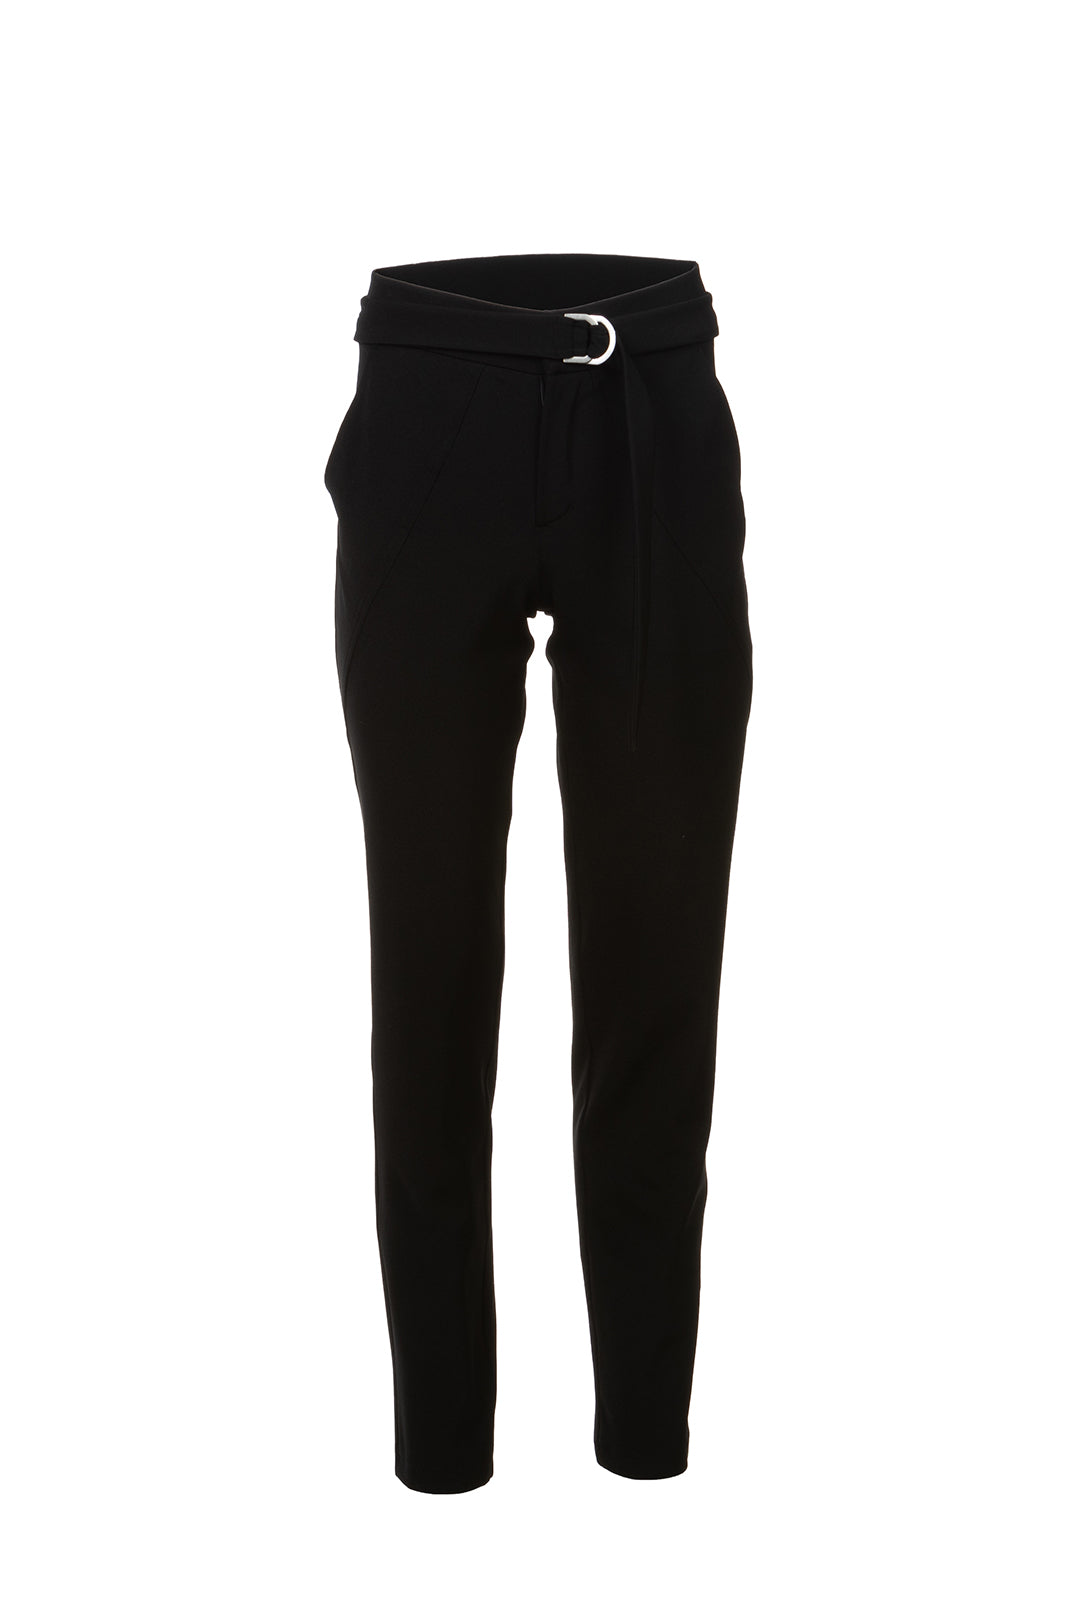 Pantalon noir | Florane